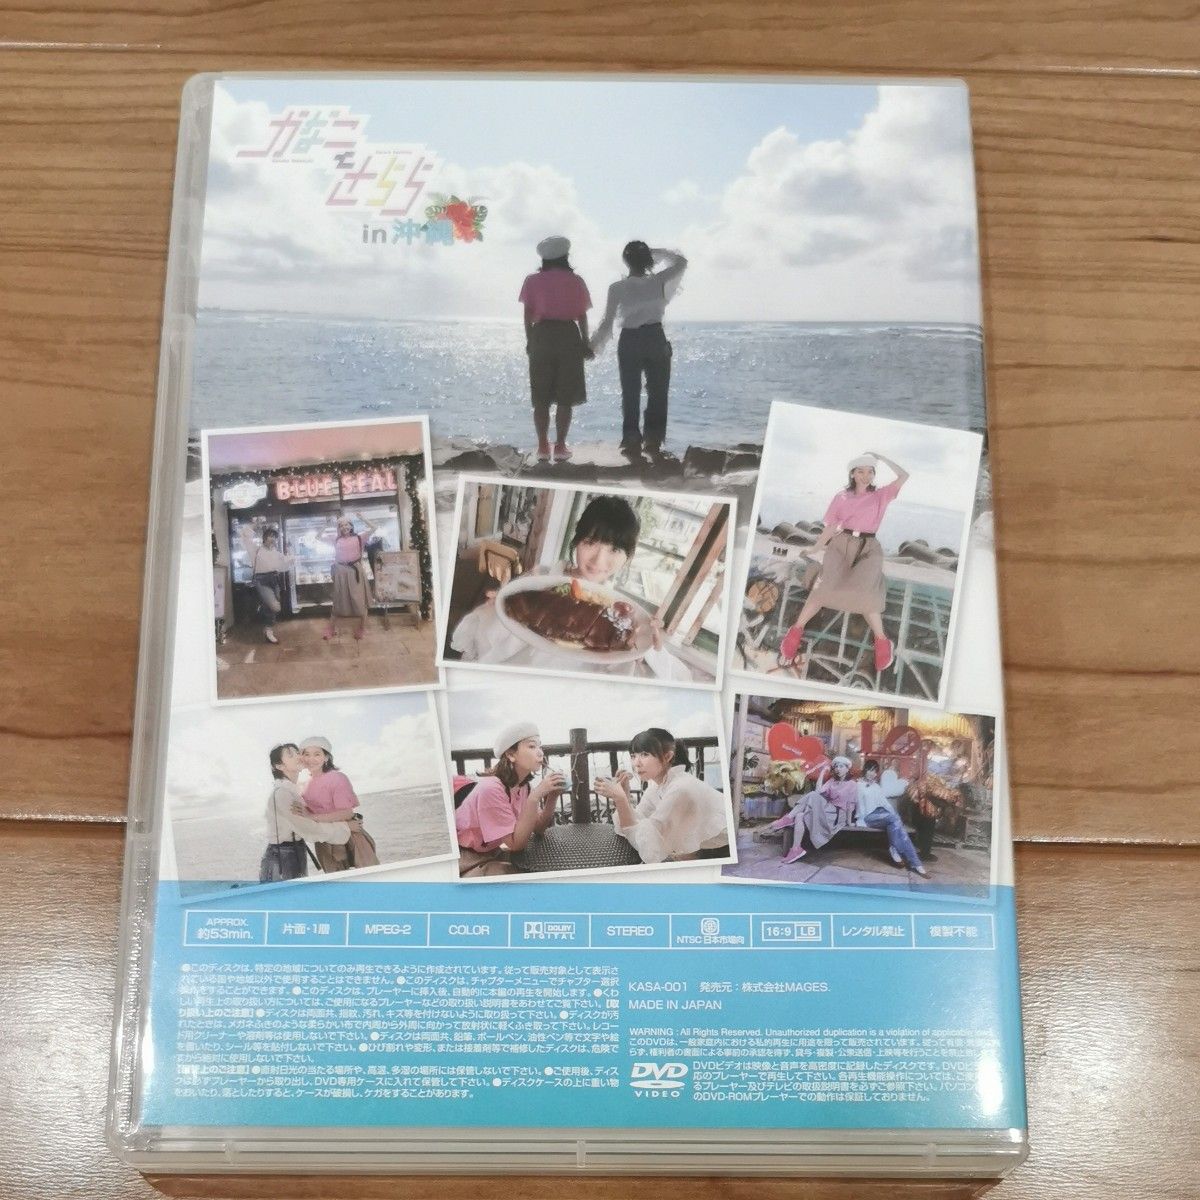 かなことさららin沖縄 DVD